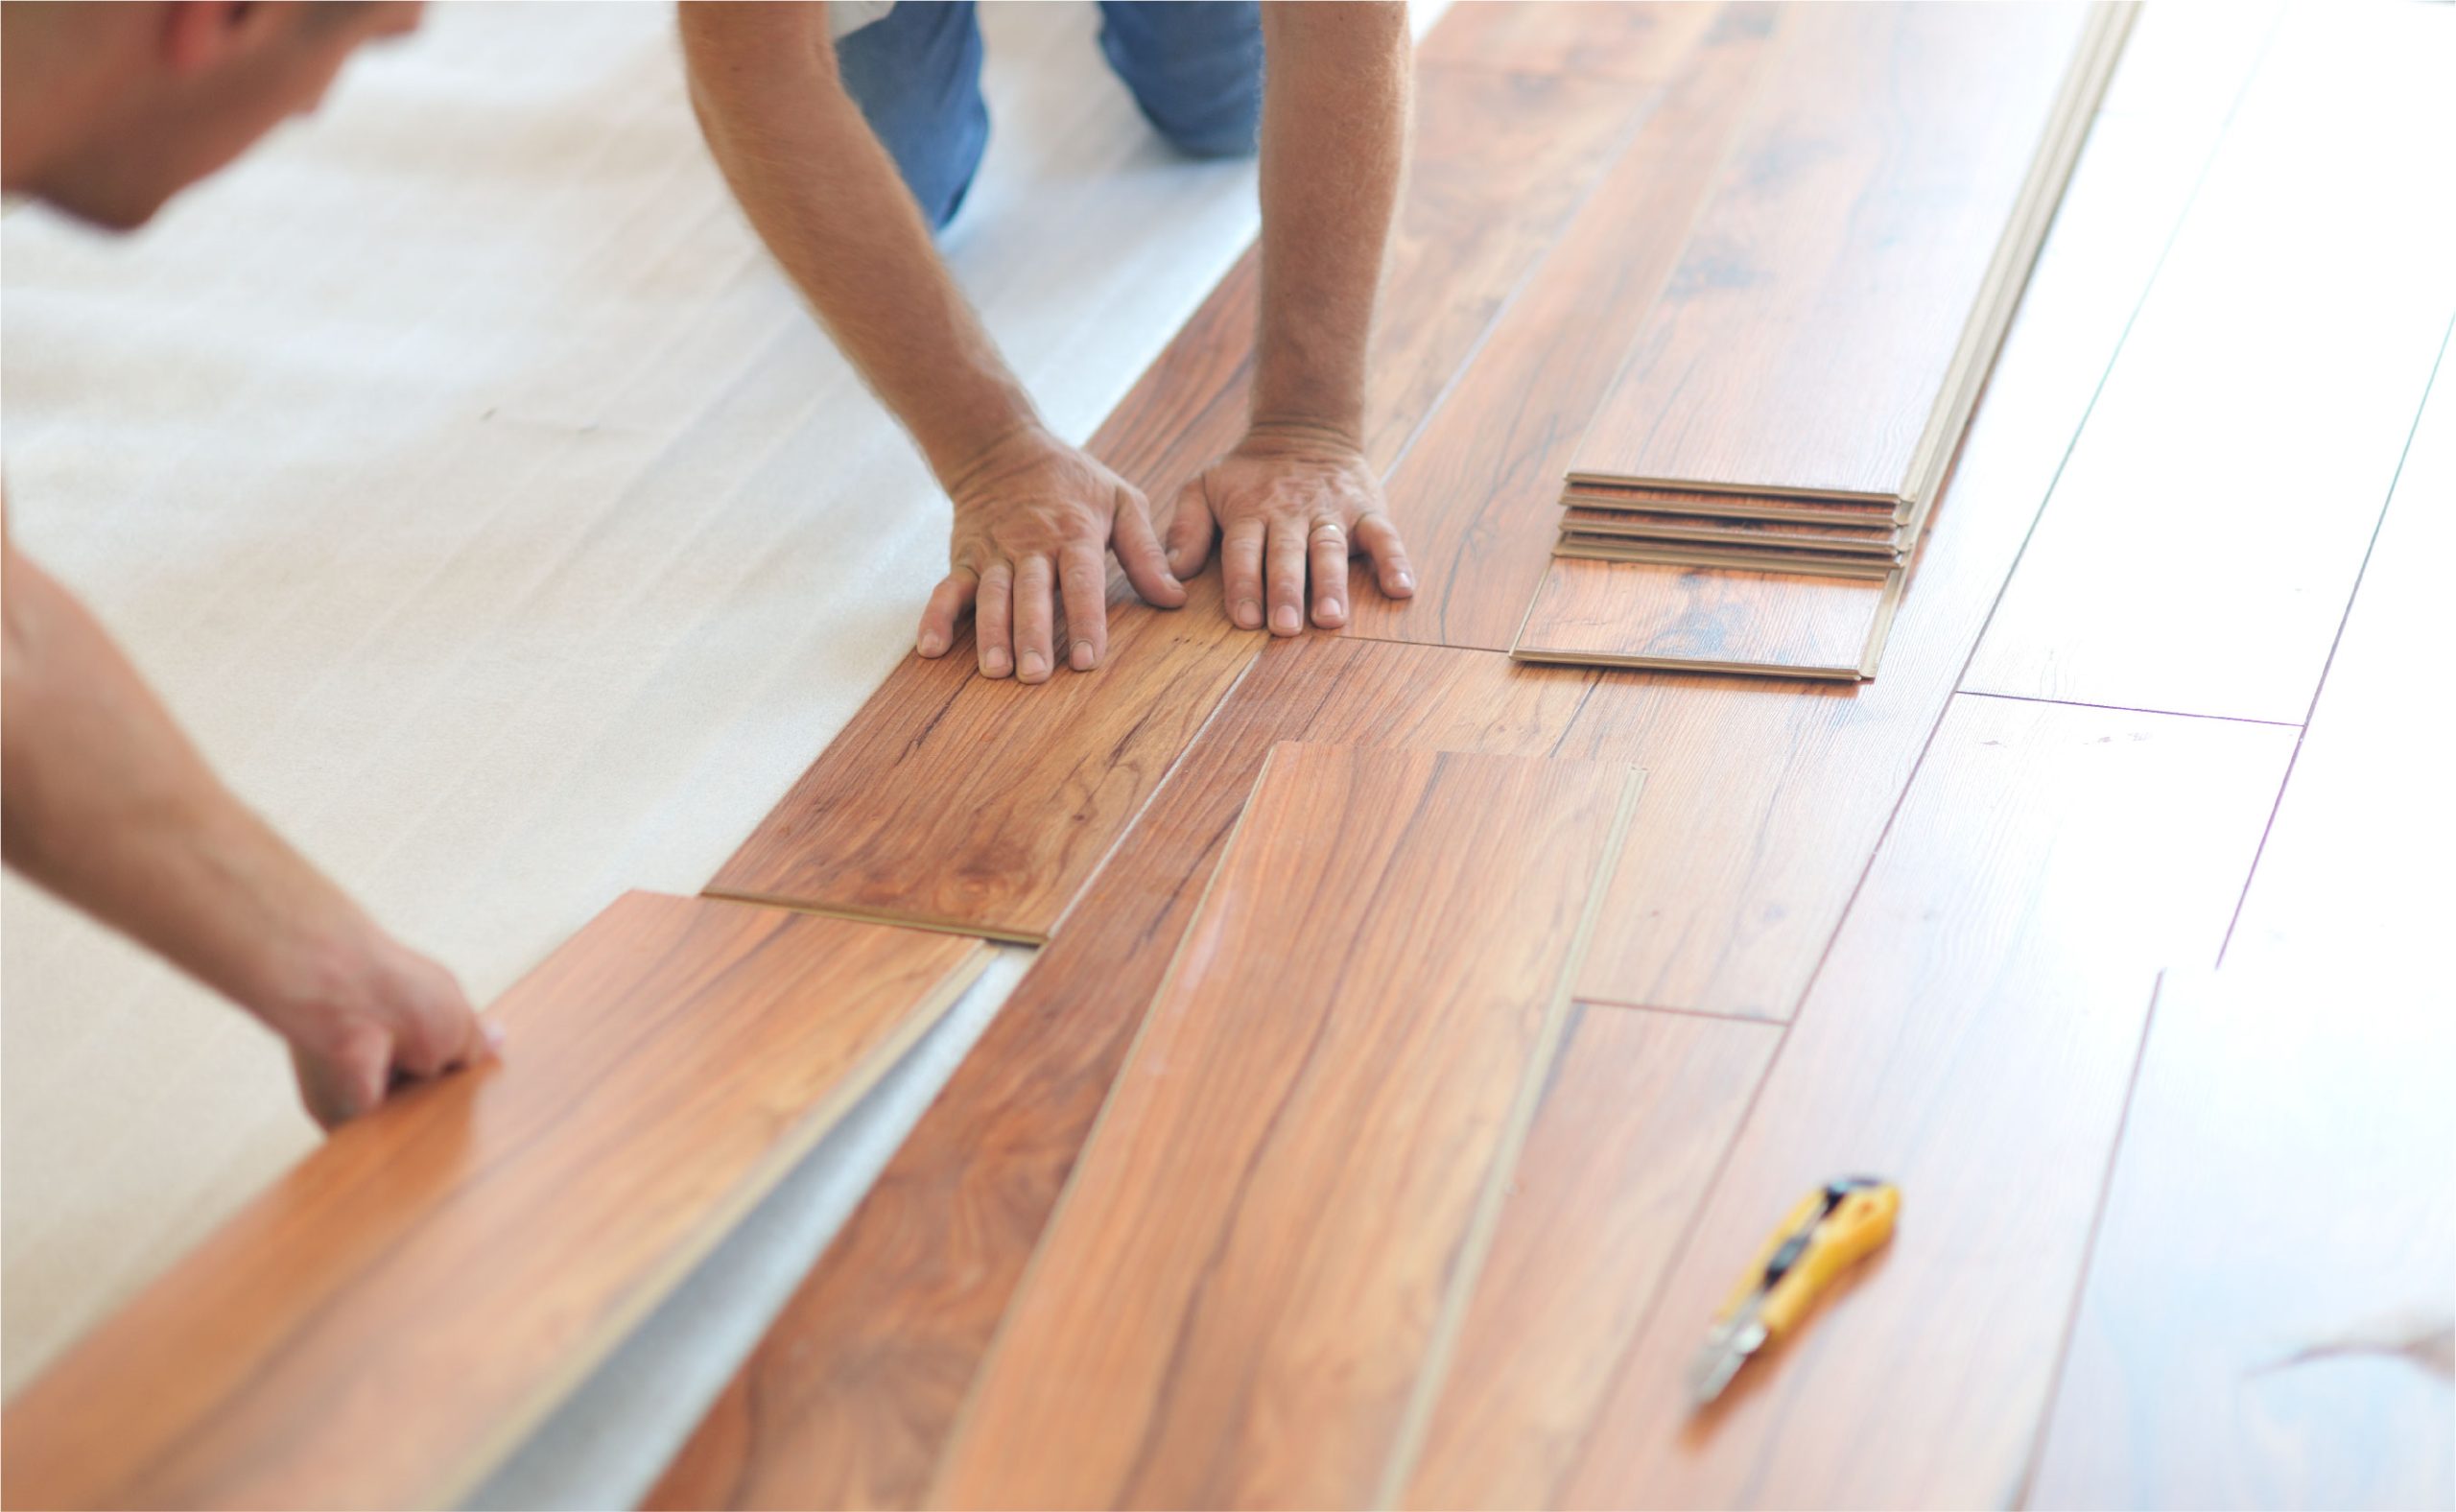 handymen installing wood floor